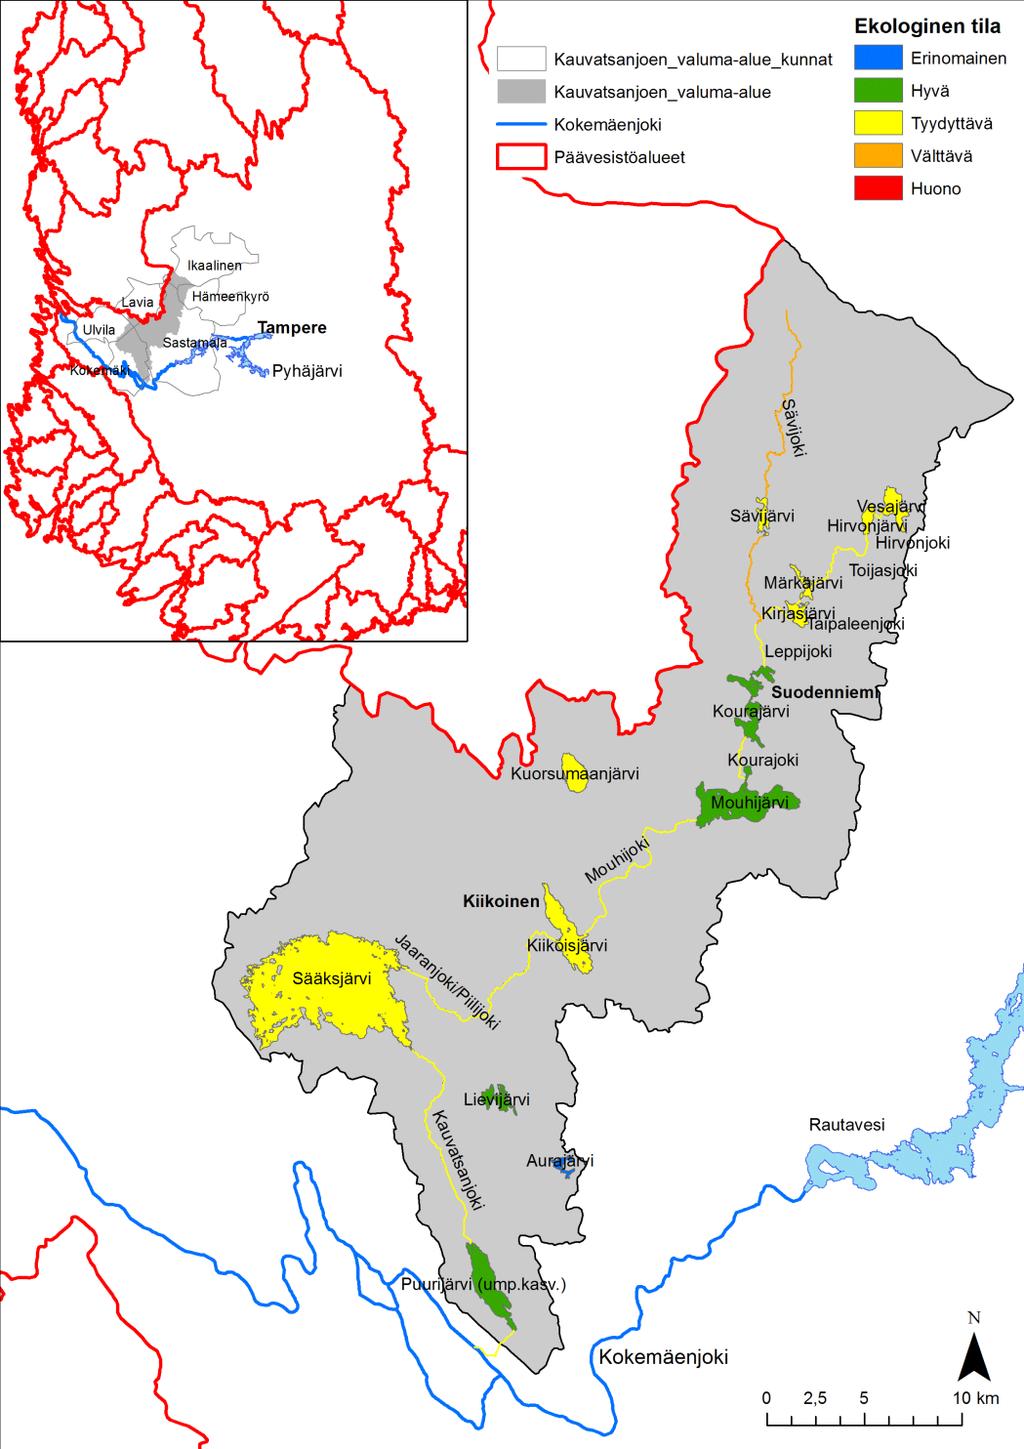 Vesistöjen ekologinen tila Sääksjärvi, Kiikoisjärvi ja latvajärvet tyydyttävässä tilassa